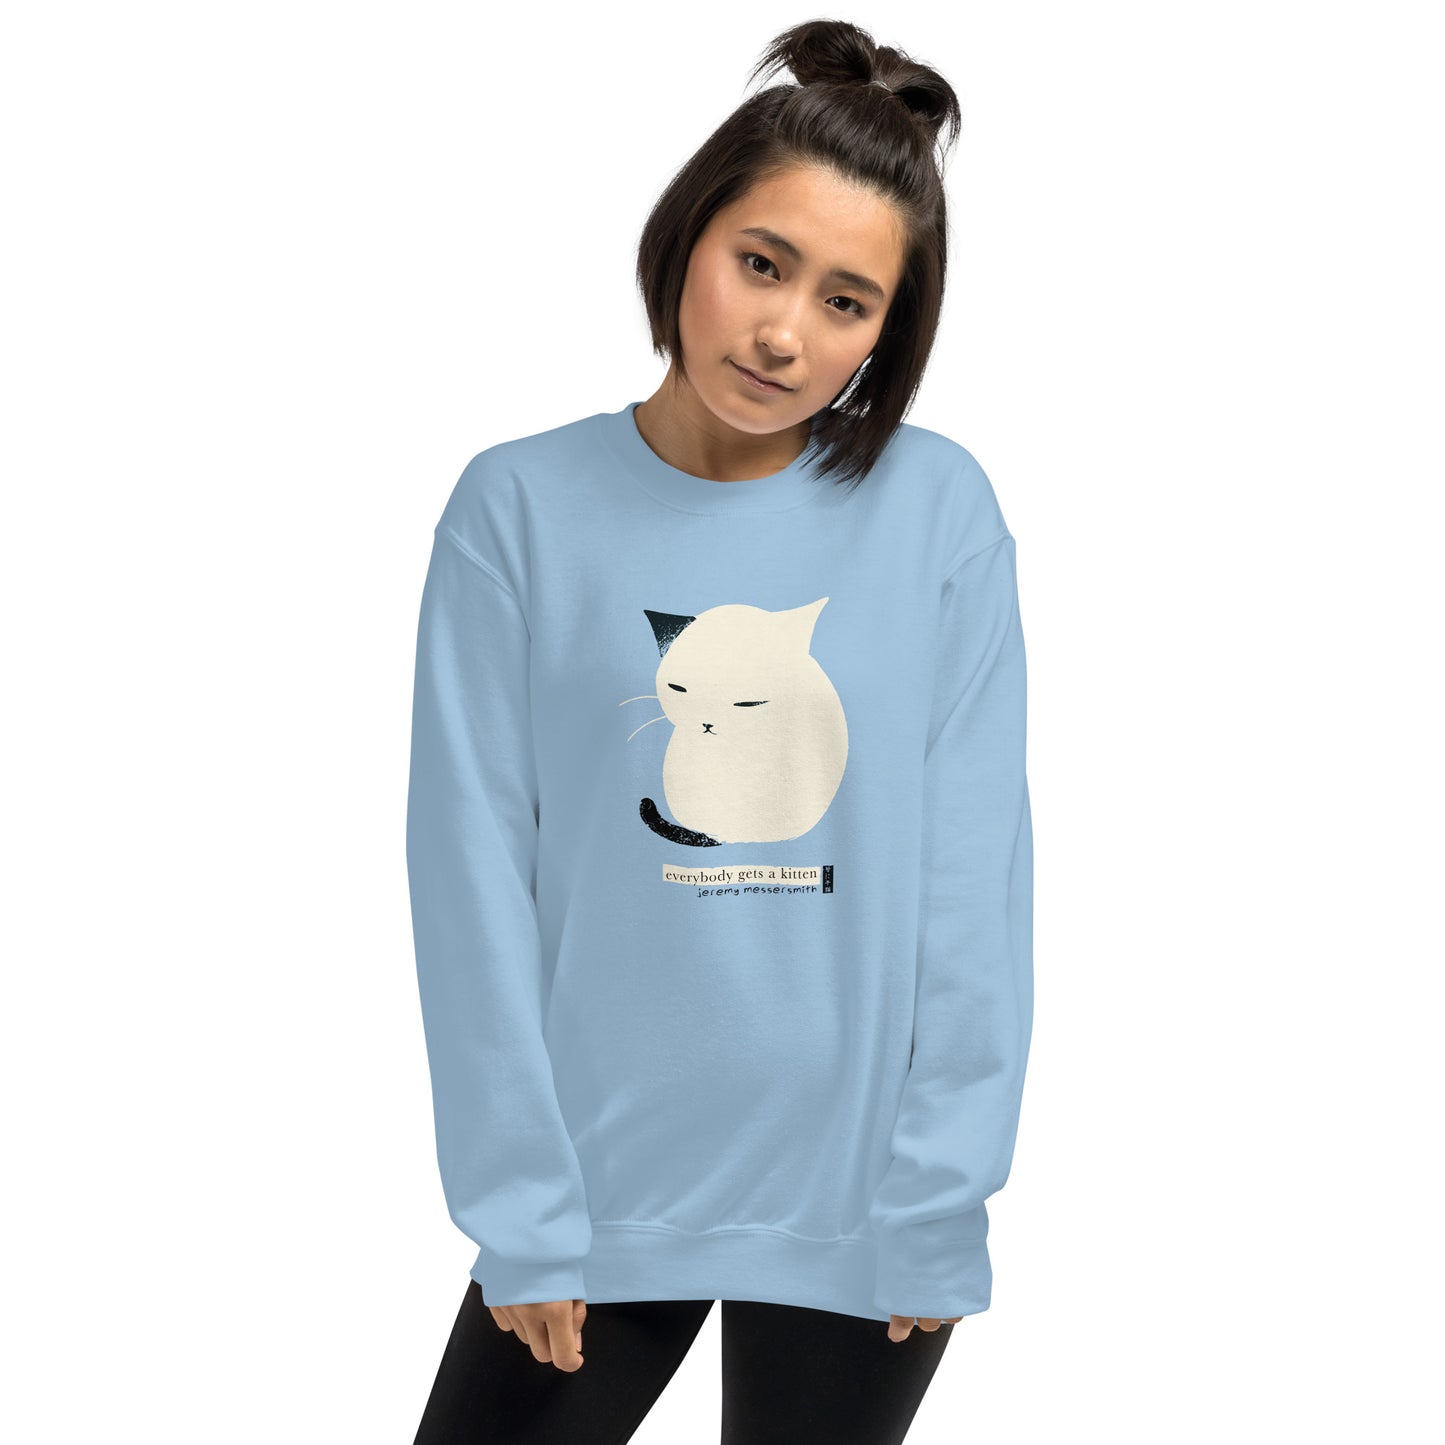 Chill Kitten Sweatshirt